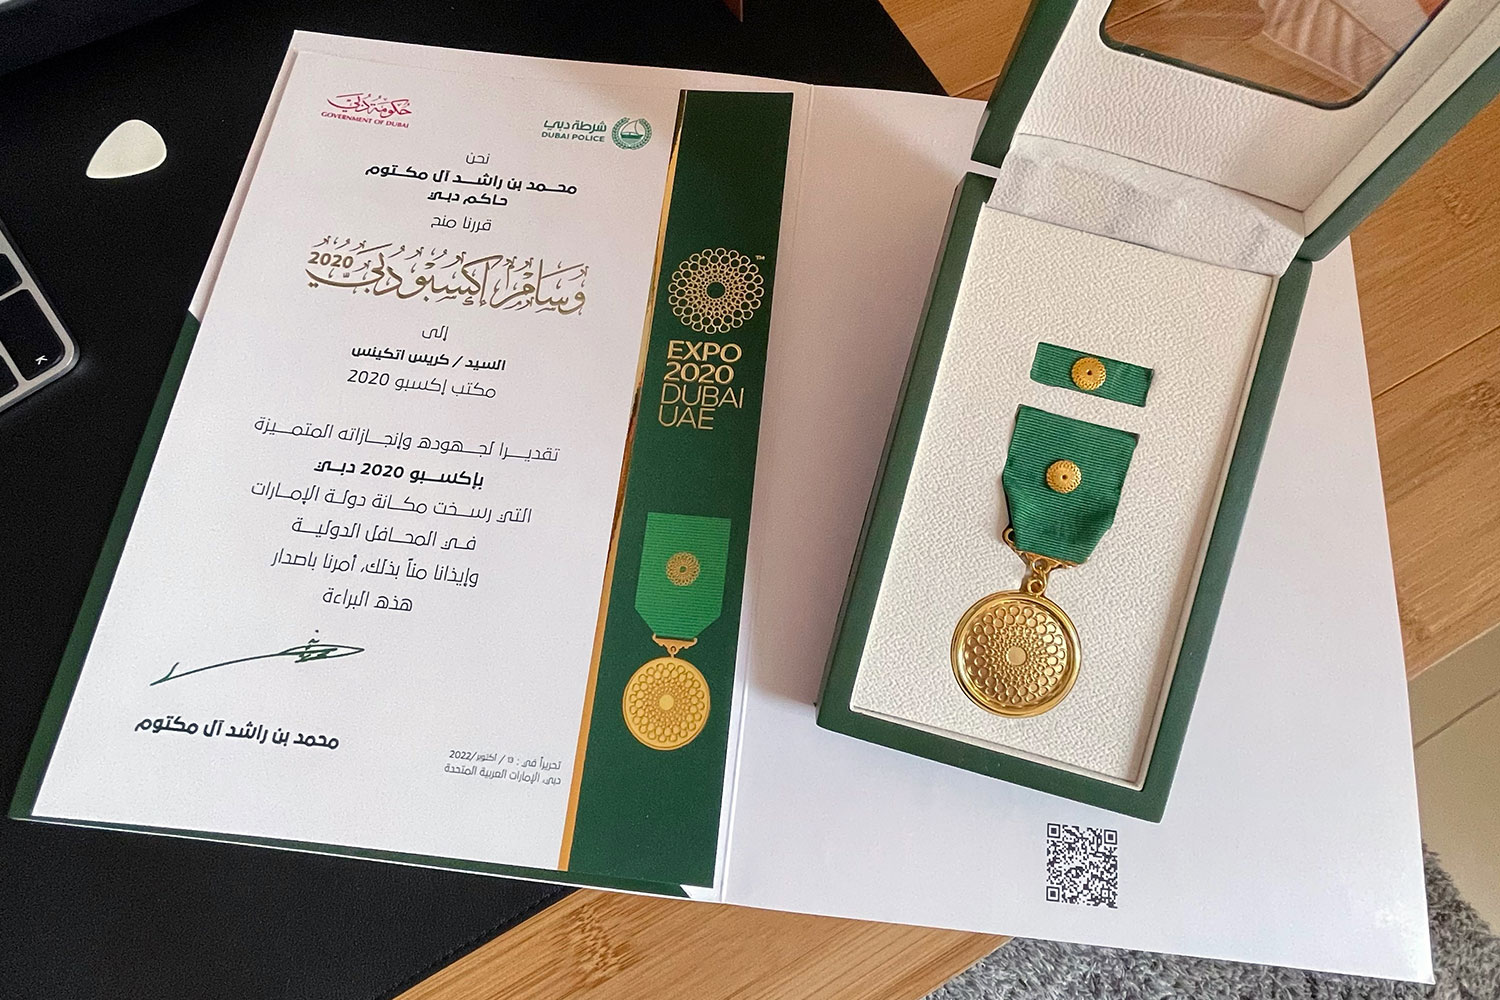 Expo 2020 Dubai Medal: A Milestone in My Career